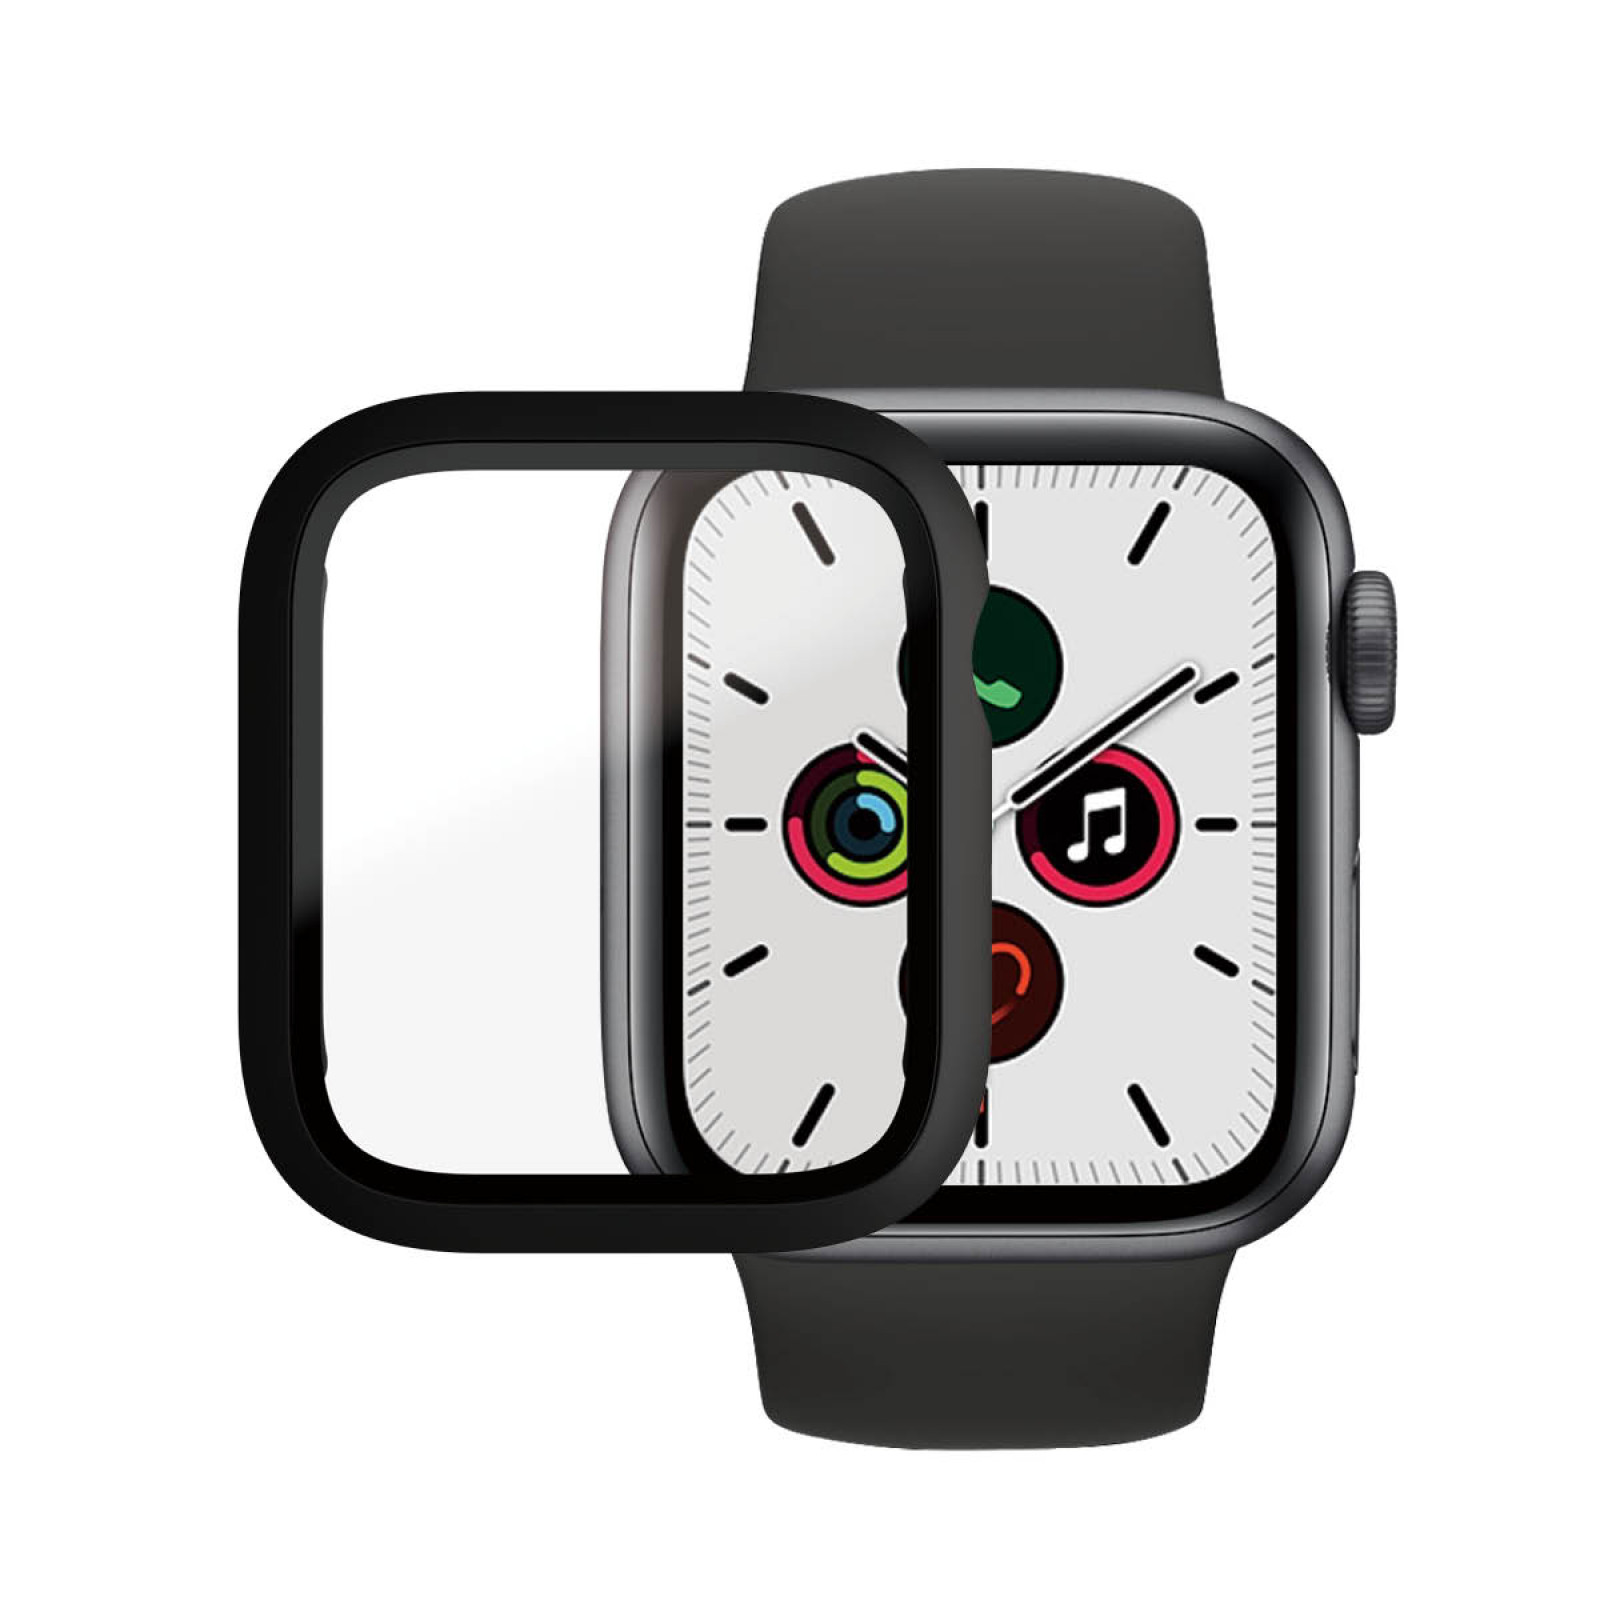 Стъклен протектор със силиконова рамка Apple watch Series 4/5/6/SE 40mm Panzerglass, AntiBacterial- Черна  рамка